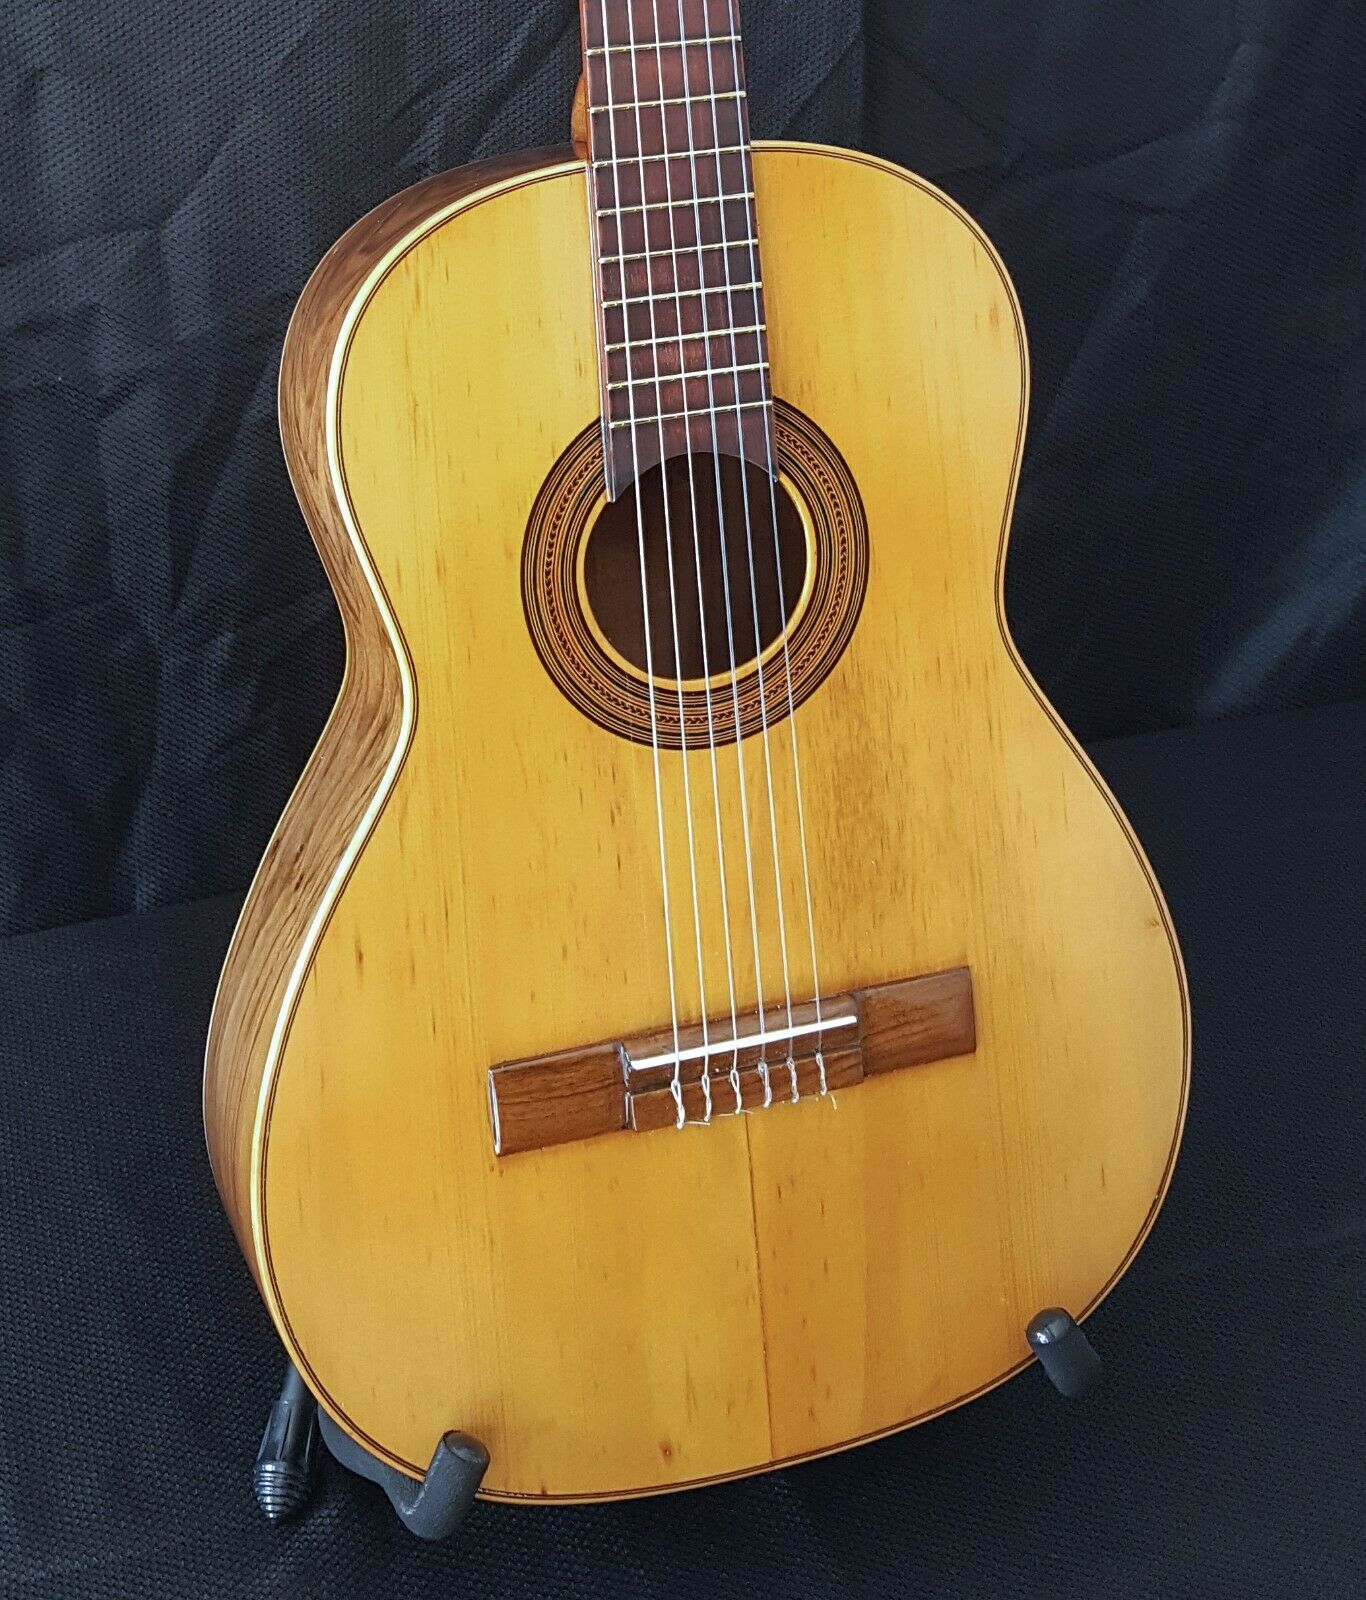 1912 Jose Ramirez The First - Historic Classical Guitar